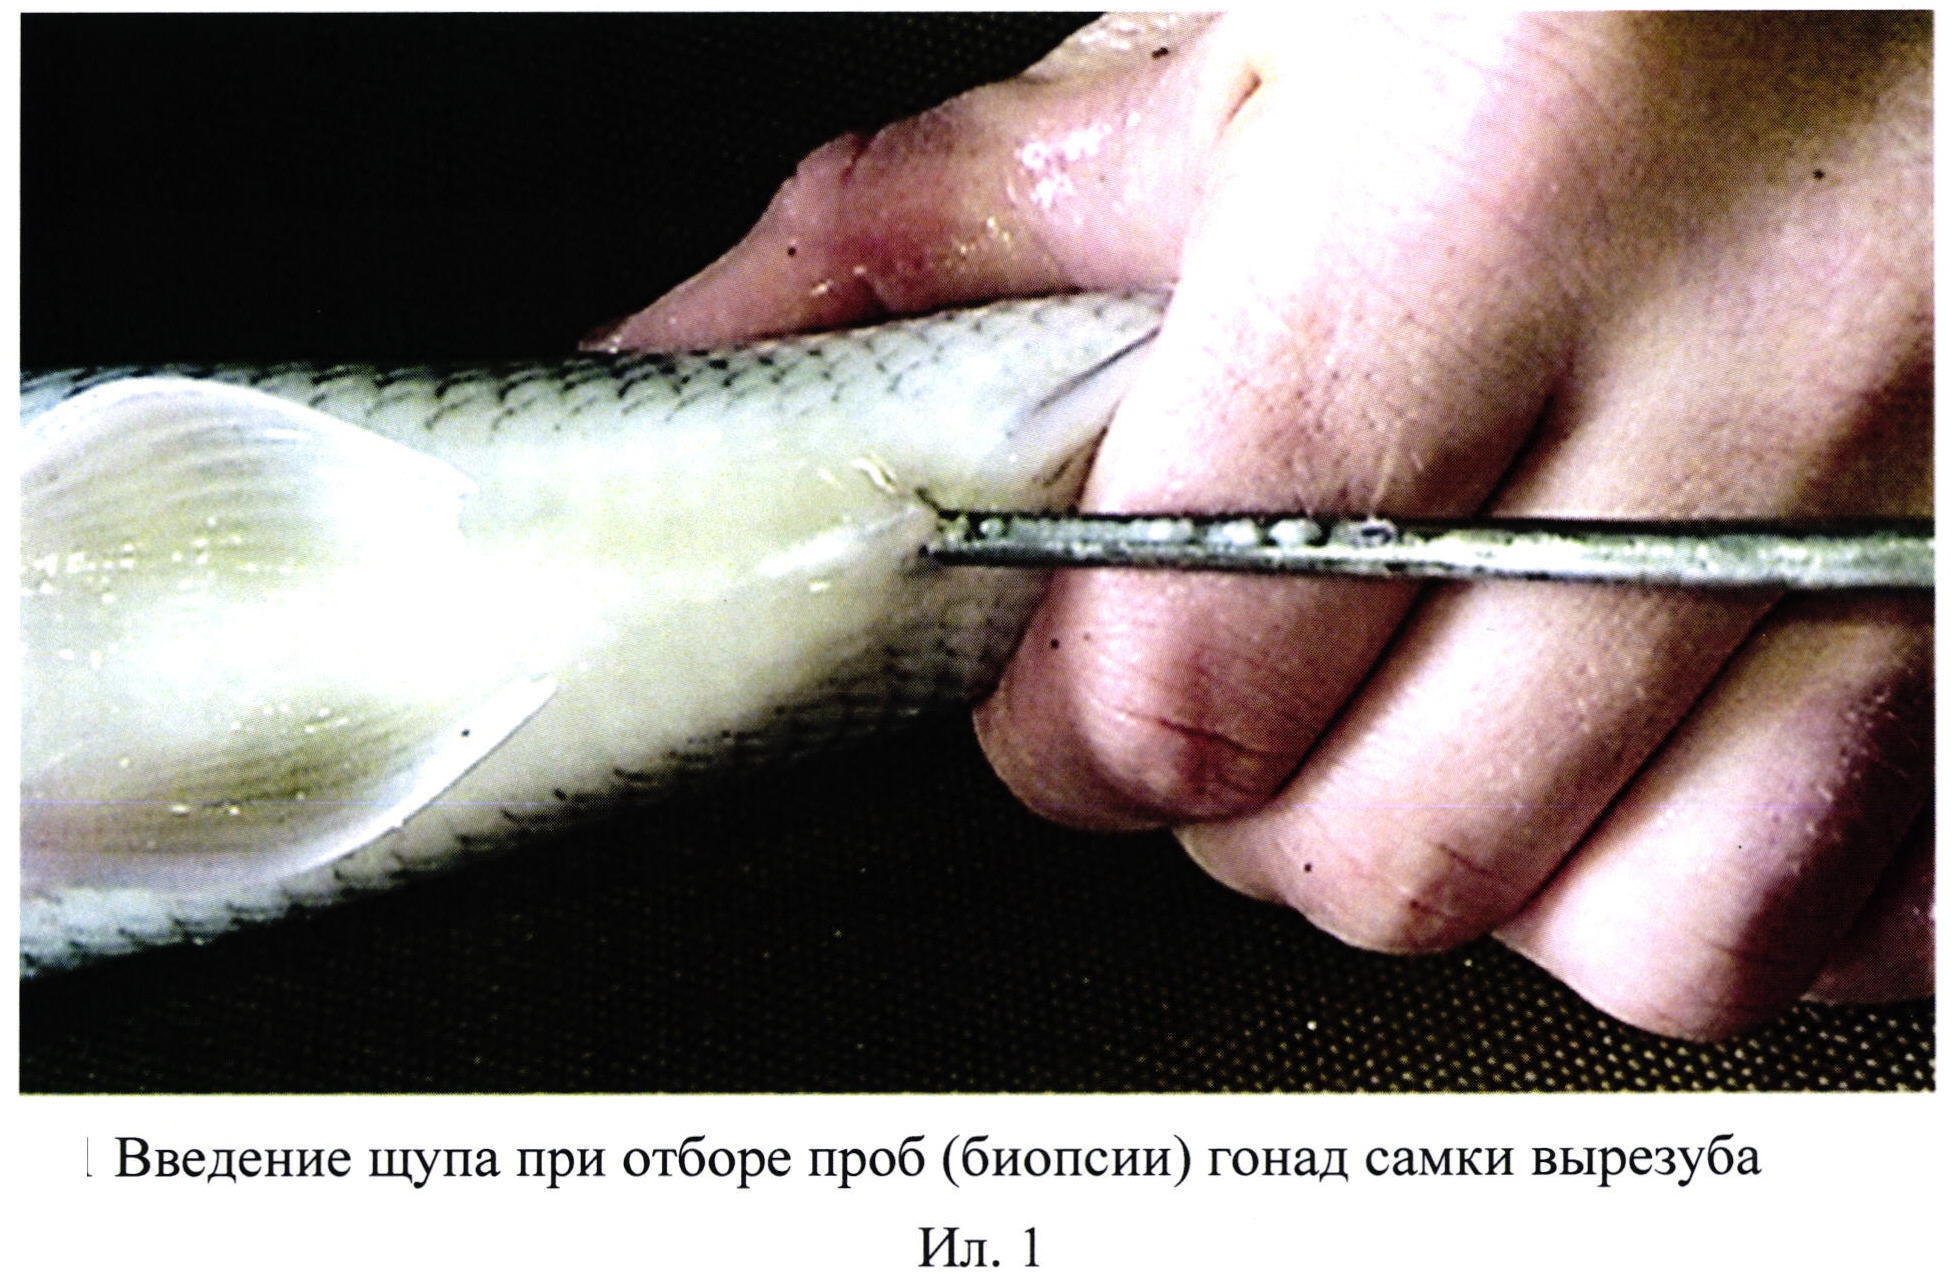 Способ введения щупа при отборе проб (биопсии) гонад вырезуба Rutilus frisii frisii